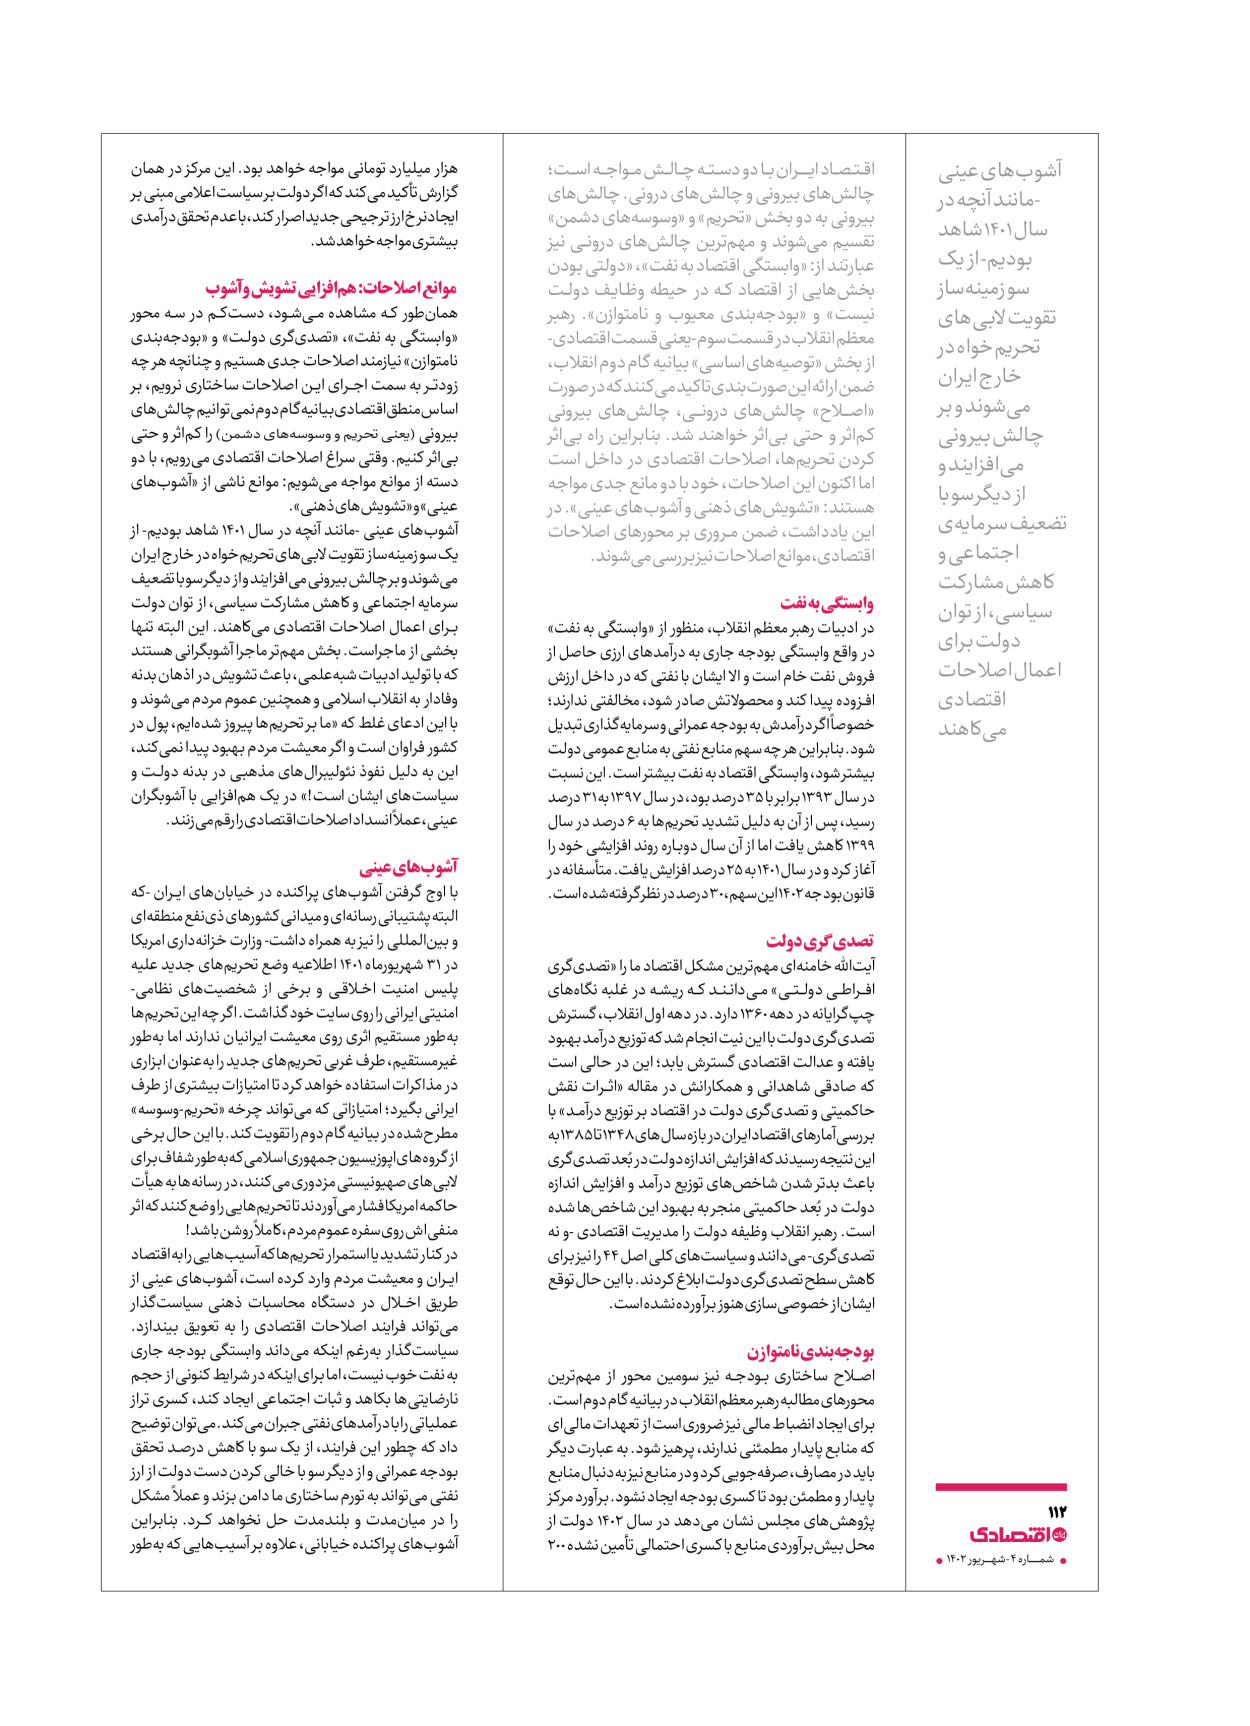 روزنامه ایران اقتصادی - ویژه نامه اقتصادی۴ - ۰۴ شهریور ۱۴۰۲ - صفحه ۱۱۲